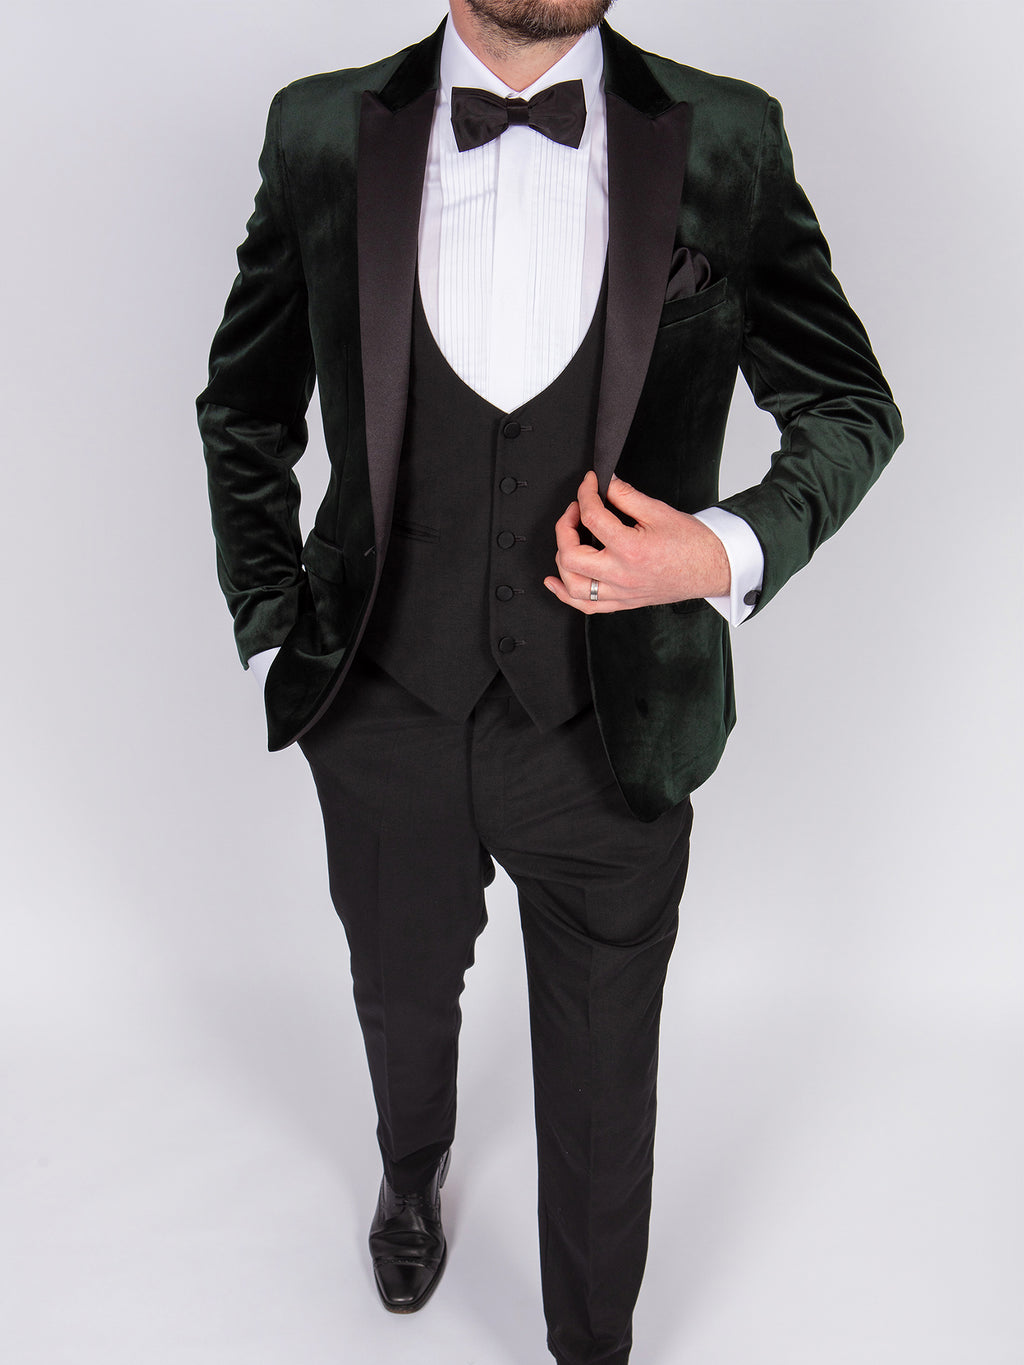 green-tuxedo-groom-suit-hire-belfast